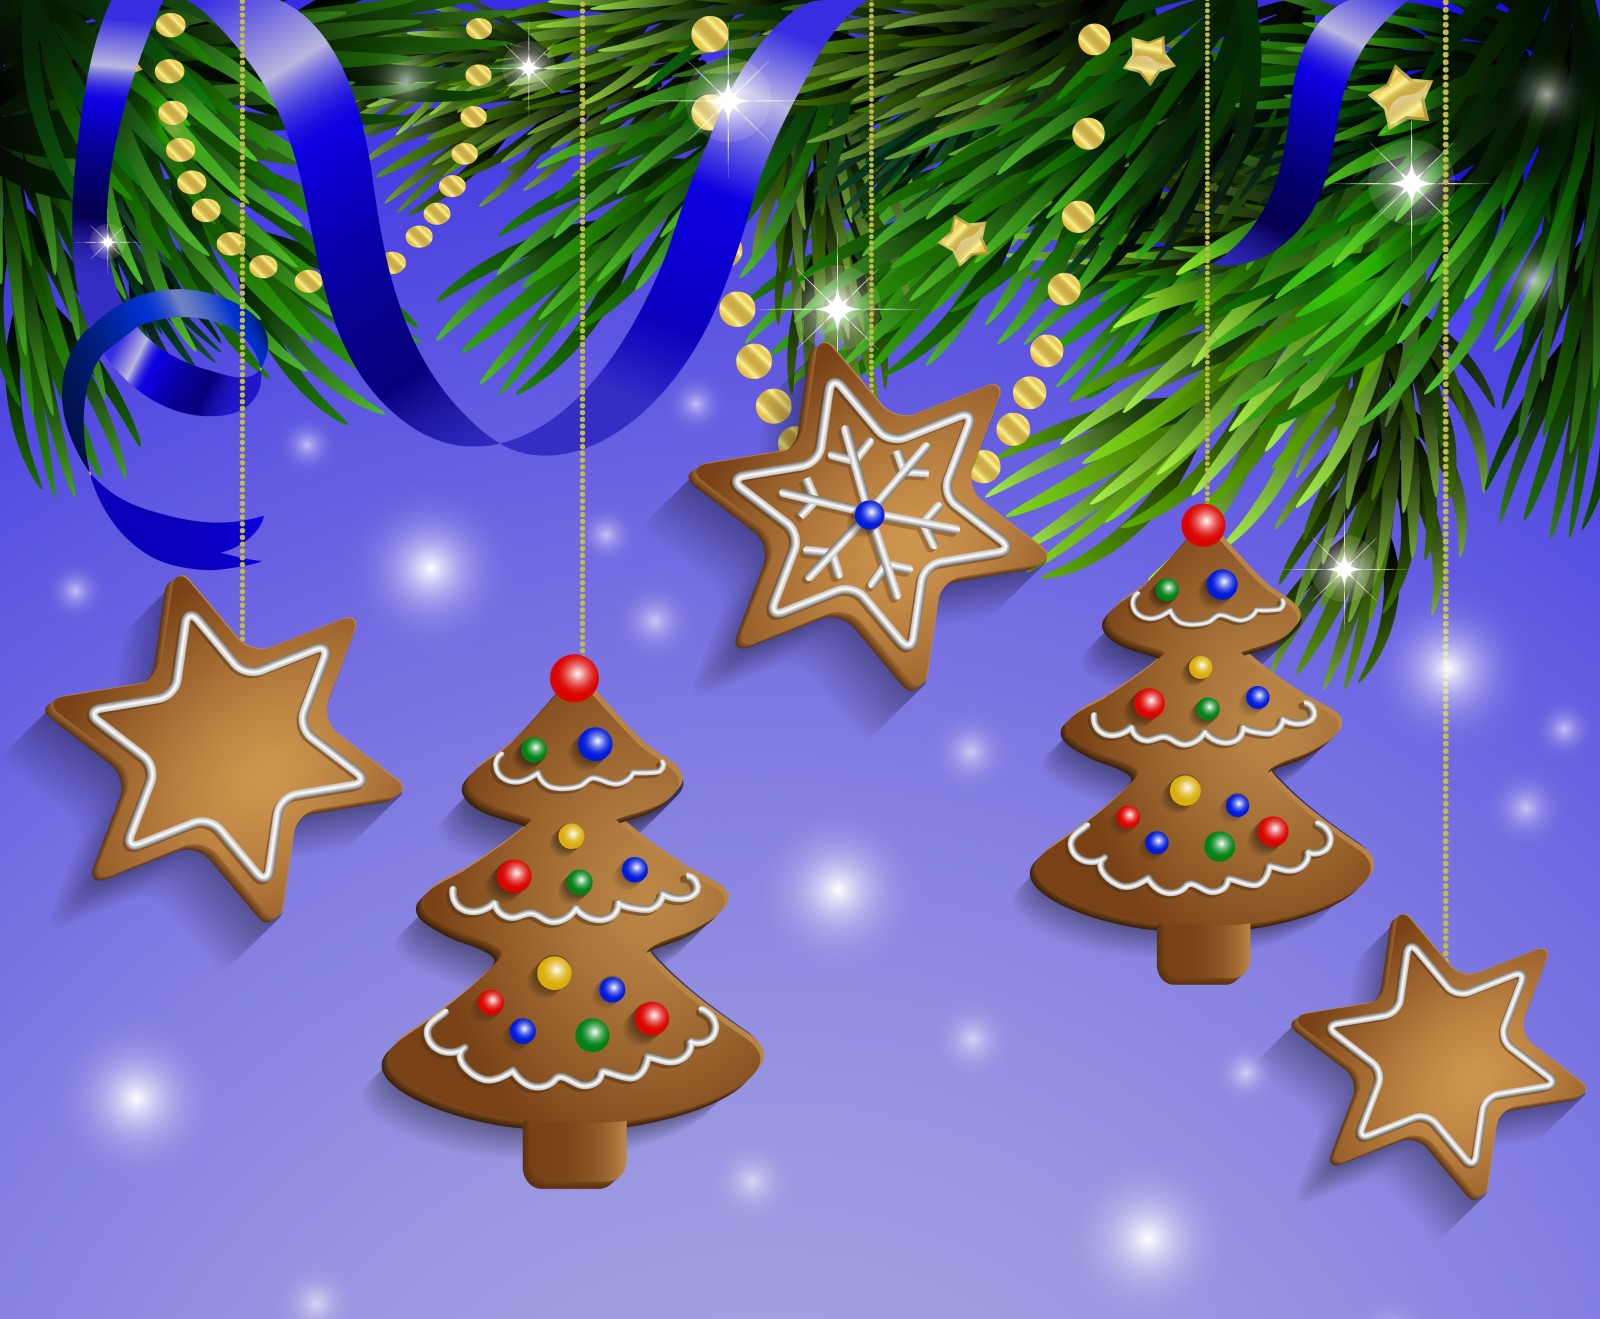 雪, 球, 新年, 圣诞, 装饰, 快活的, 圣诞节, 饼干